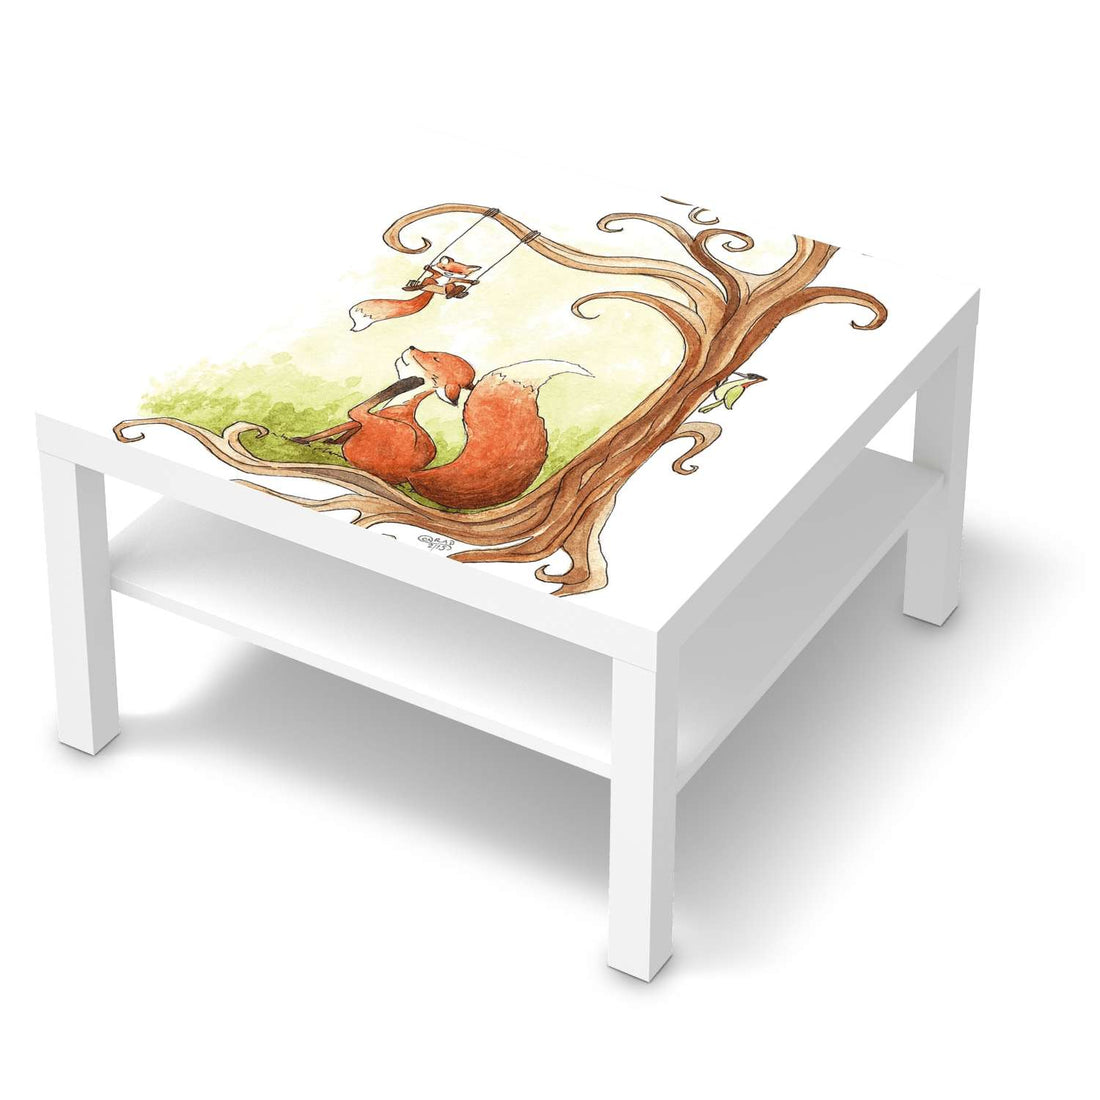 Selbstklebende Folie Füchse - IKEA Lack Tisch 78x78 cm - weiss